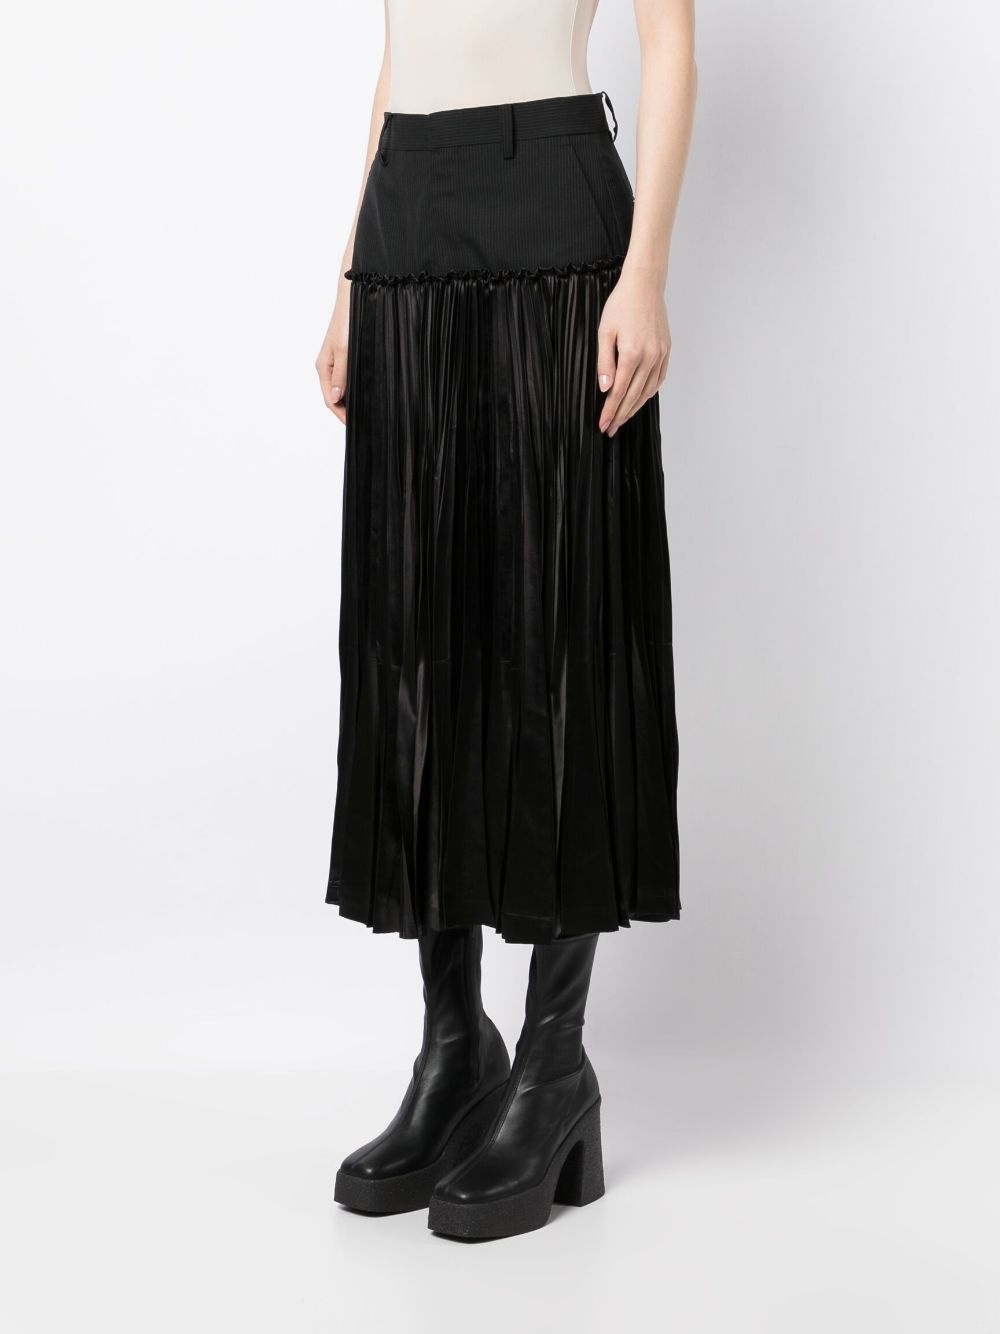 panelled pleated skirt - 3